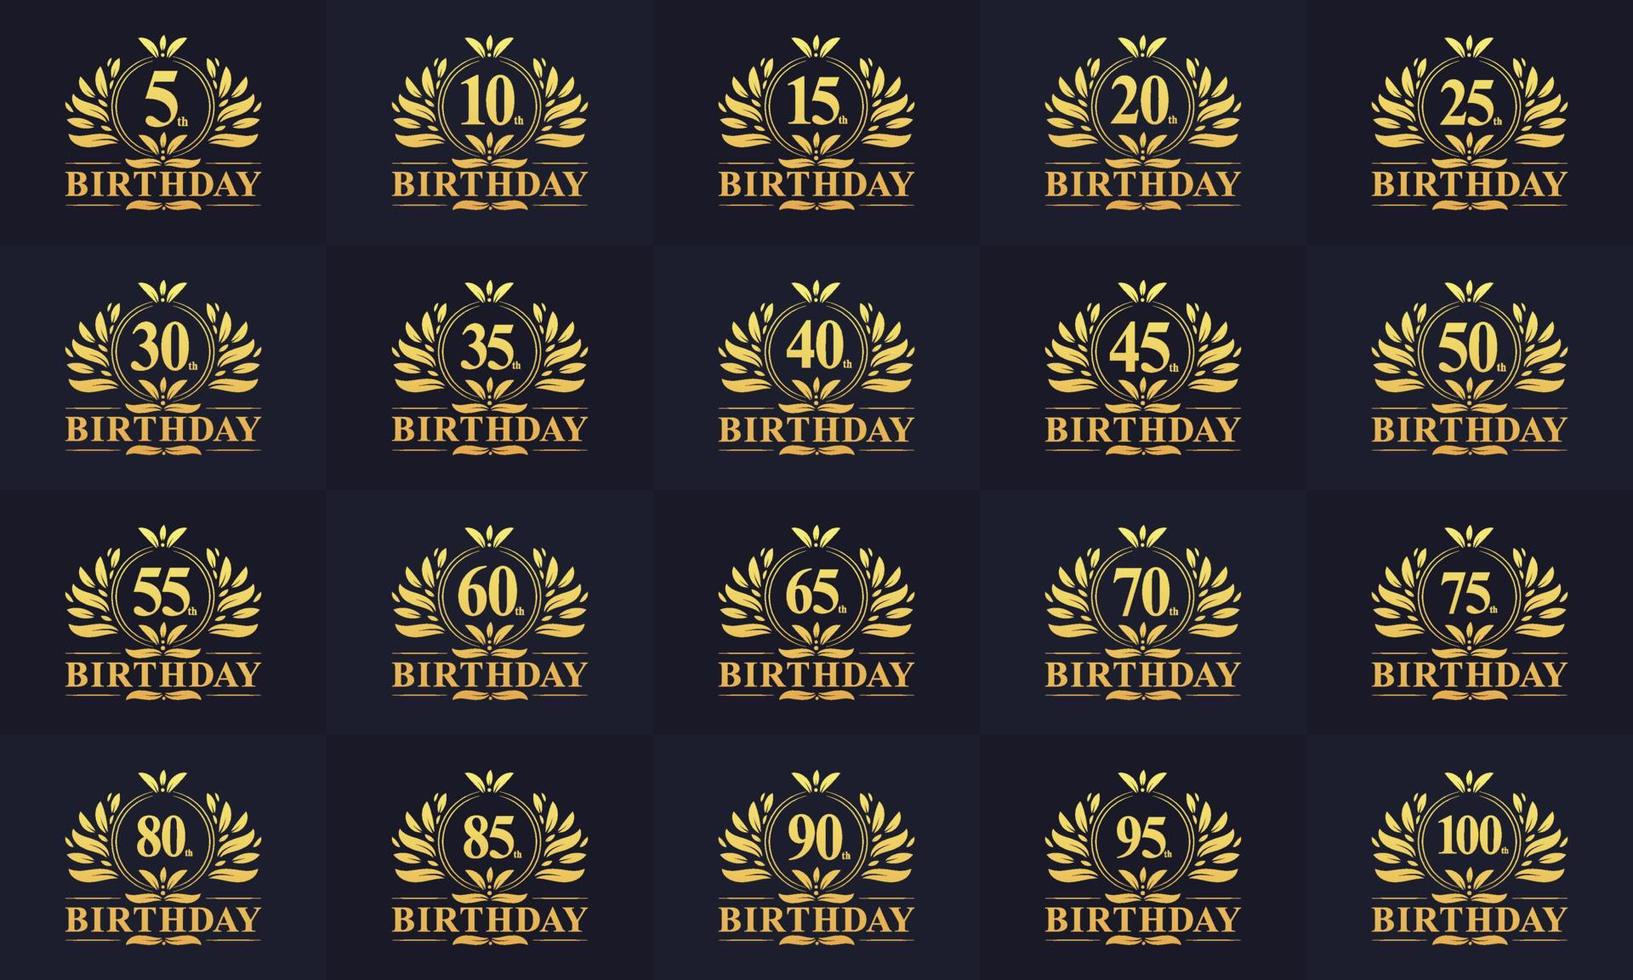 ensemble de logos joyeux anniversaire. ensemble de logo d'anniversaire vintage rétro. 5e, 10e, 15e, 20e, 25e, 30e, 35e, 40e, 45e, 50e anniversaire ensemble de logos de célébration. vecteur